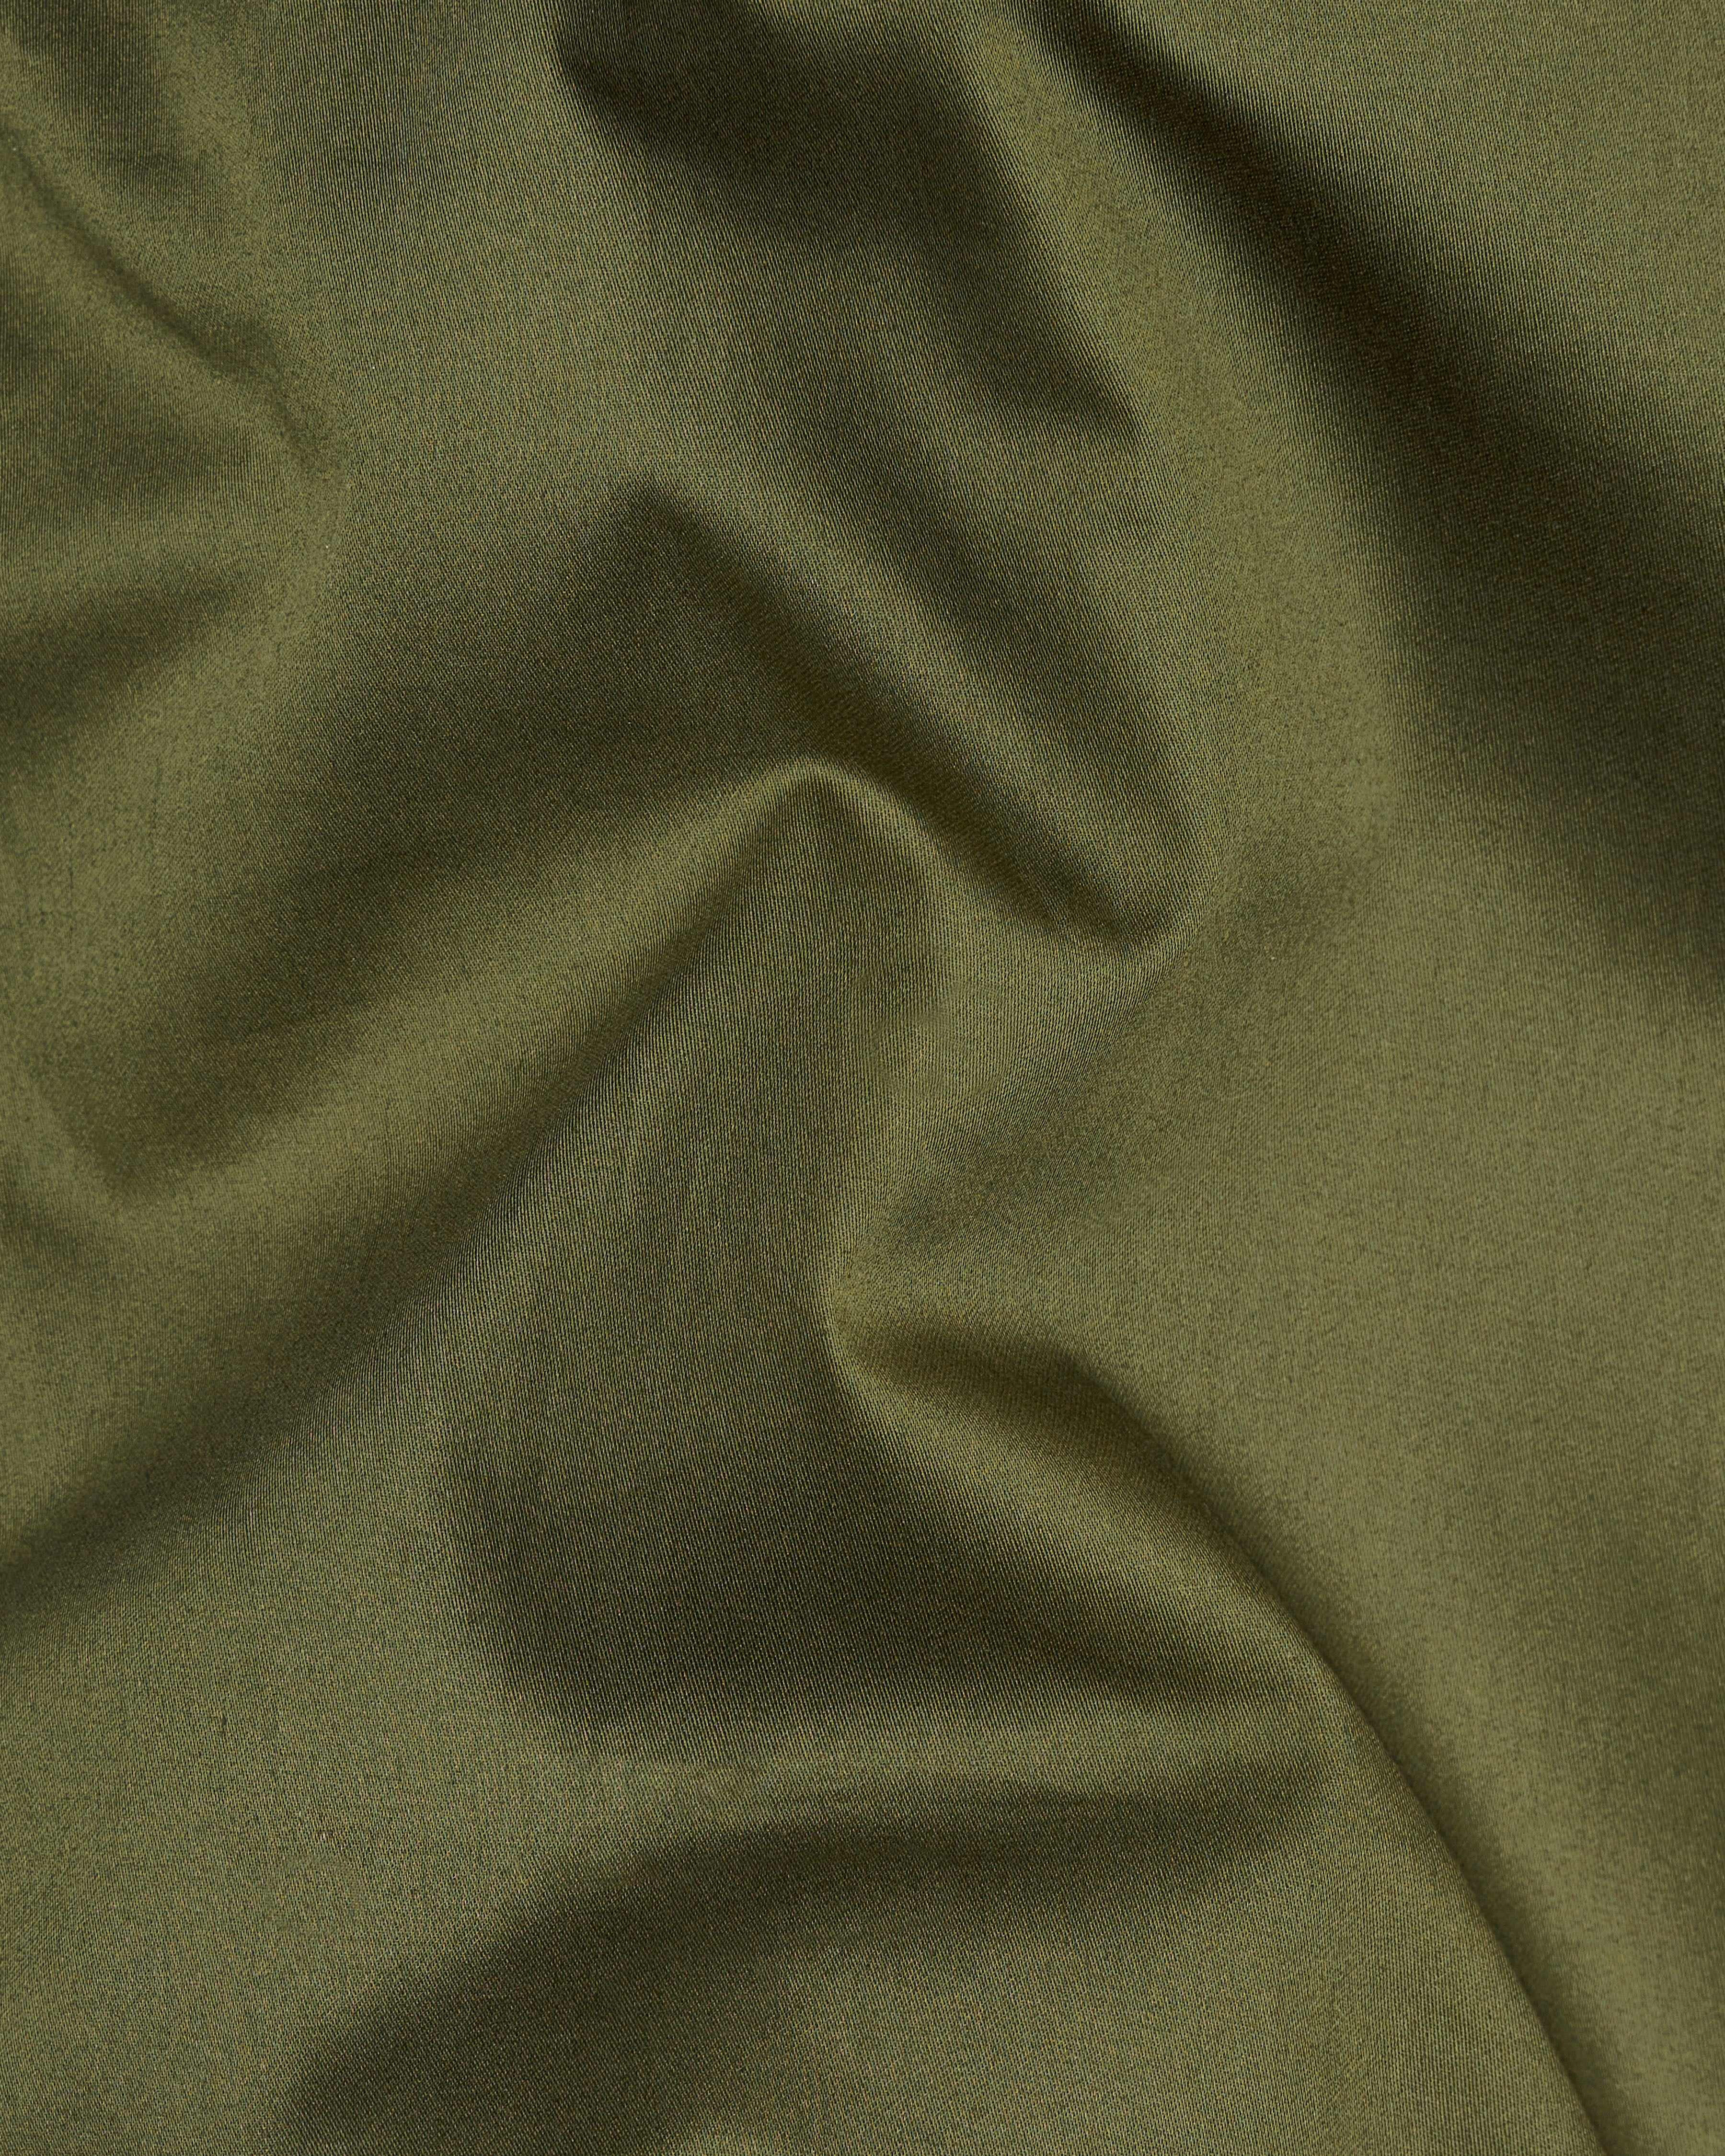 Fuscous Green Subtle Sheen Super Soft Premium Cotton Shirt 8867-BLK-38, 8867-BLK-H-38, 8867-BLK-39, 8867-BLK-H-39, 8867-BLK-40, 8867-BLK-H-40, 8867-BLK-42, 8867-BLK-H-42, 8867-BLK-44, 8867-BLK-H-44, 8867-BLK-46, 8867-BLK-H-46, 8867-BLK-48, 8867-BLK-H-48, 8867-BLK-50, 8867-BLK-H-50, 8867-BLK-52, 8867-BLK-H-52